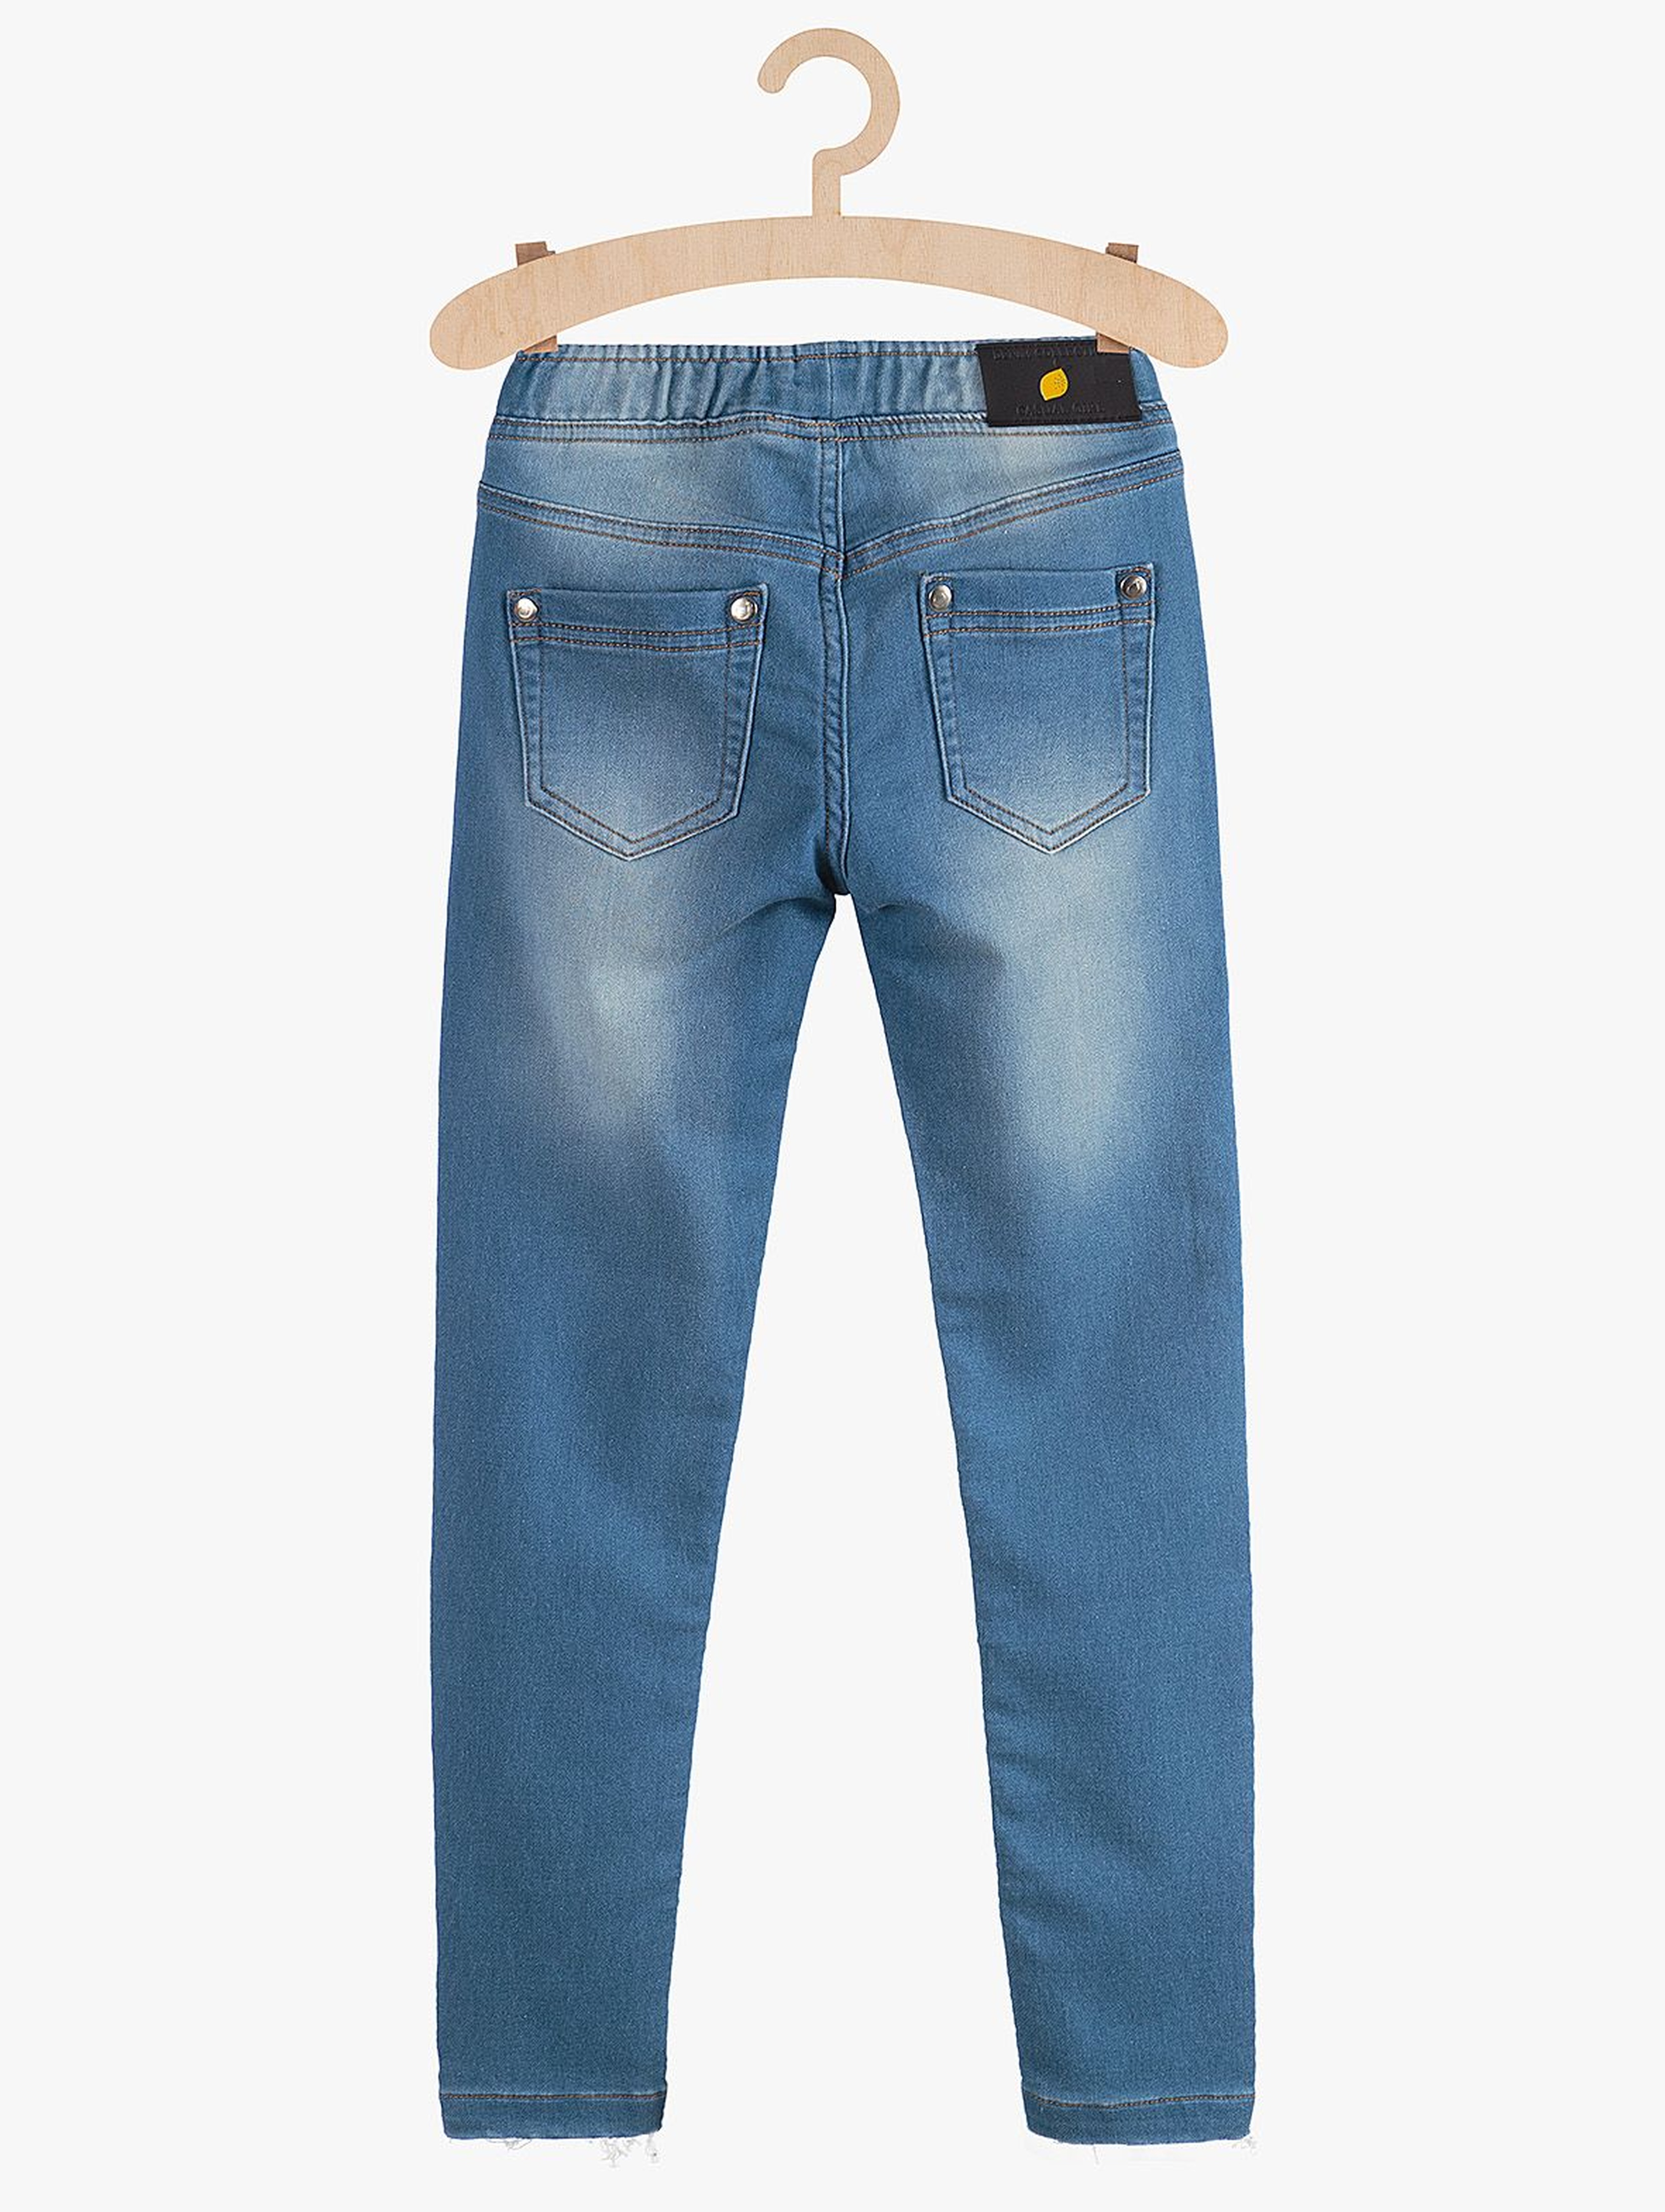 Spodnie dziewczęce jeansowe  z kieszeniami- niebieskie